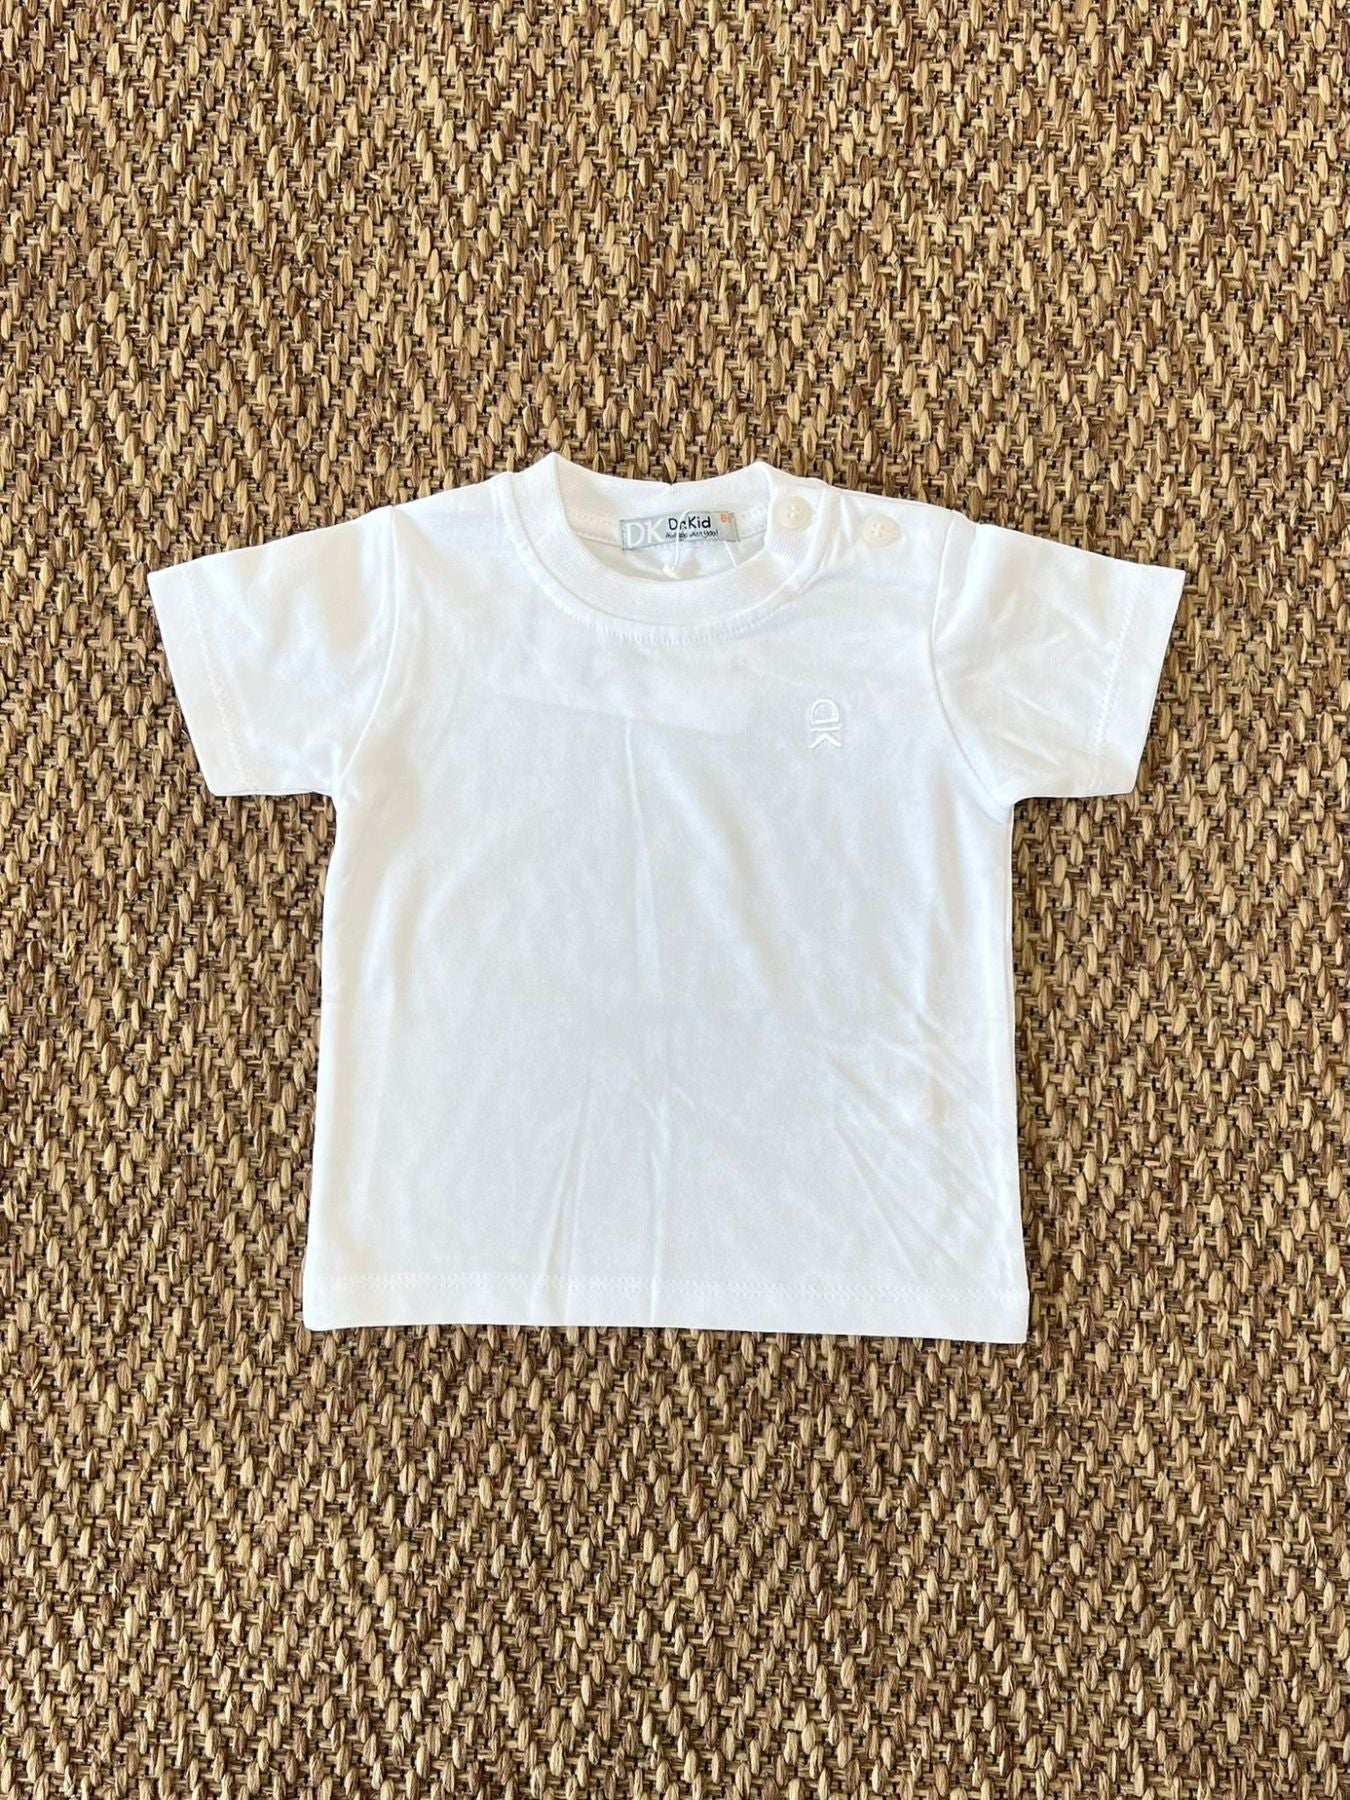 T-shirt - DK40/PV24